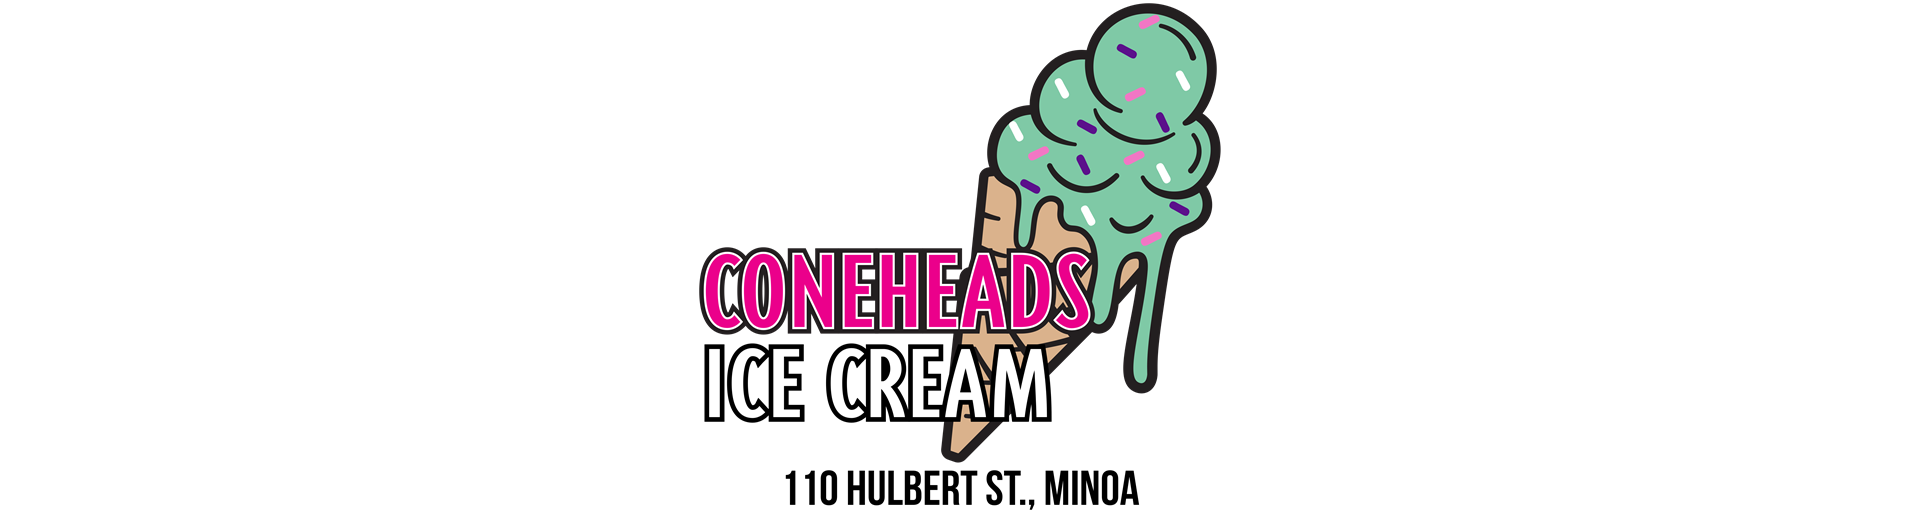 CONEHEADS ICE CREAM NOW OPEN